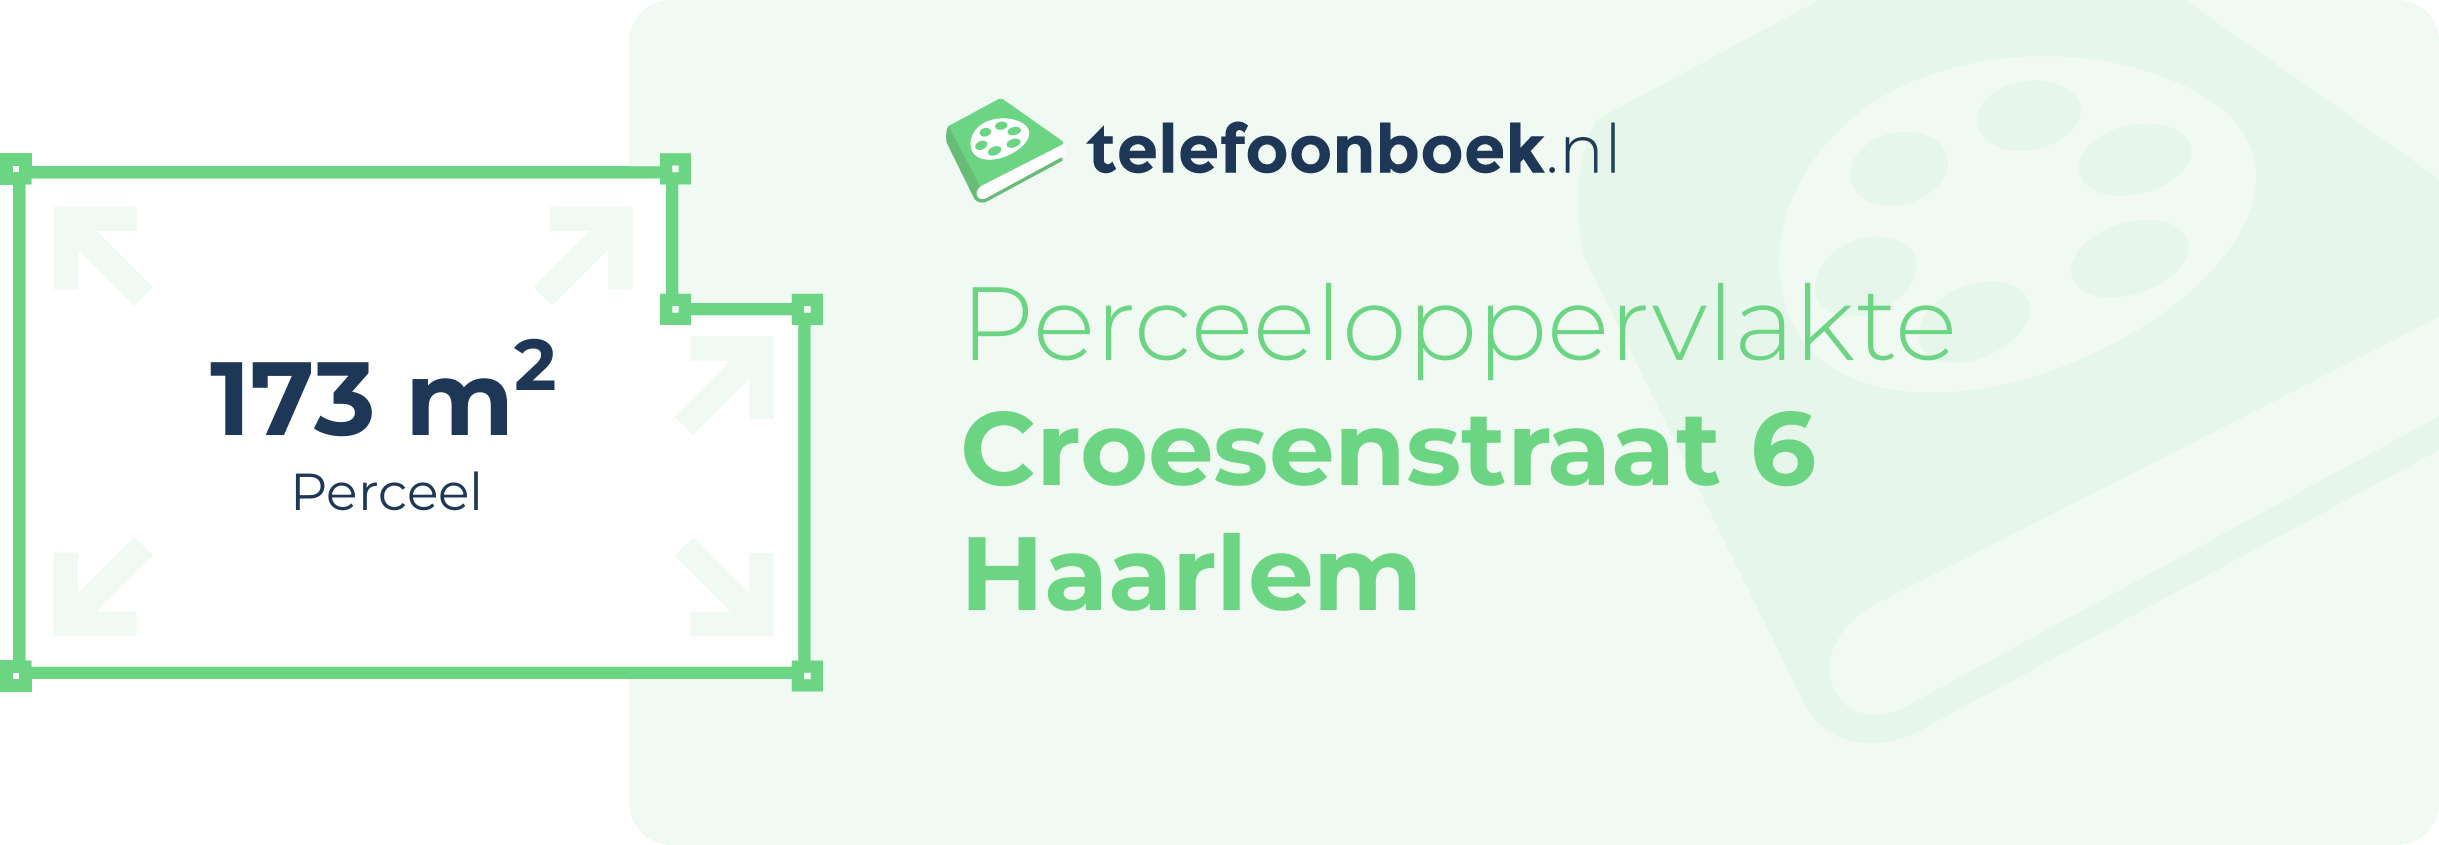 Perceeloppervlakte Croesenstraat 6 Haarlem